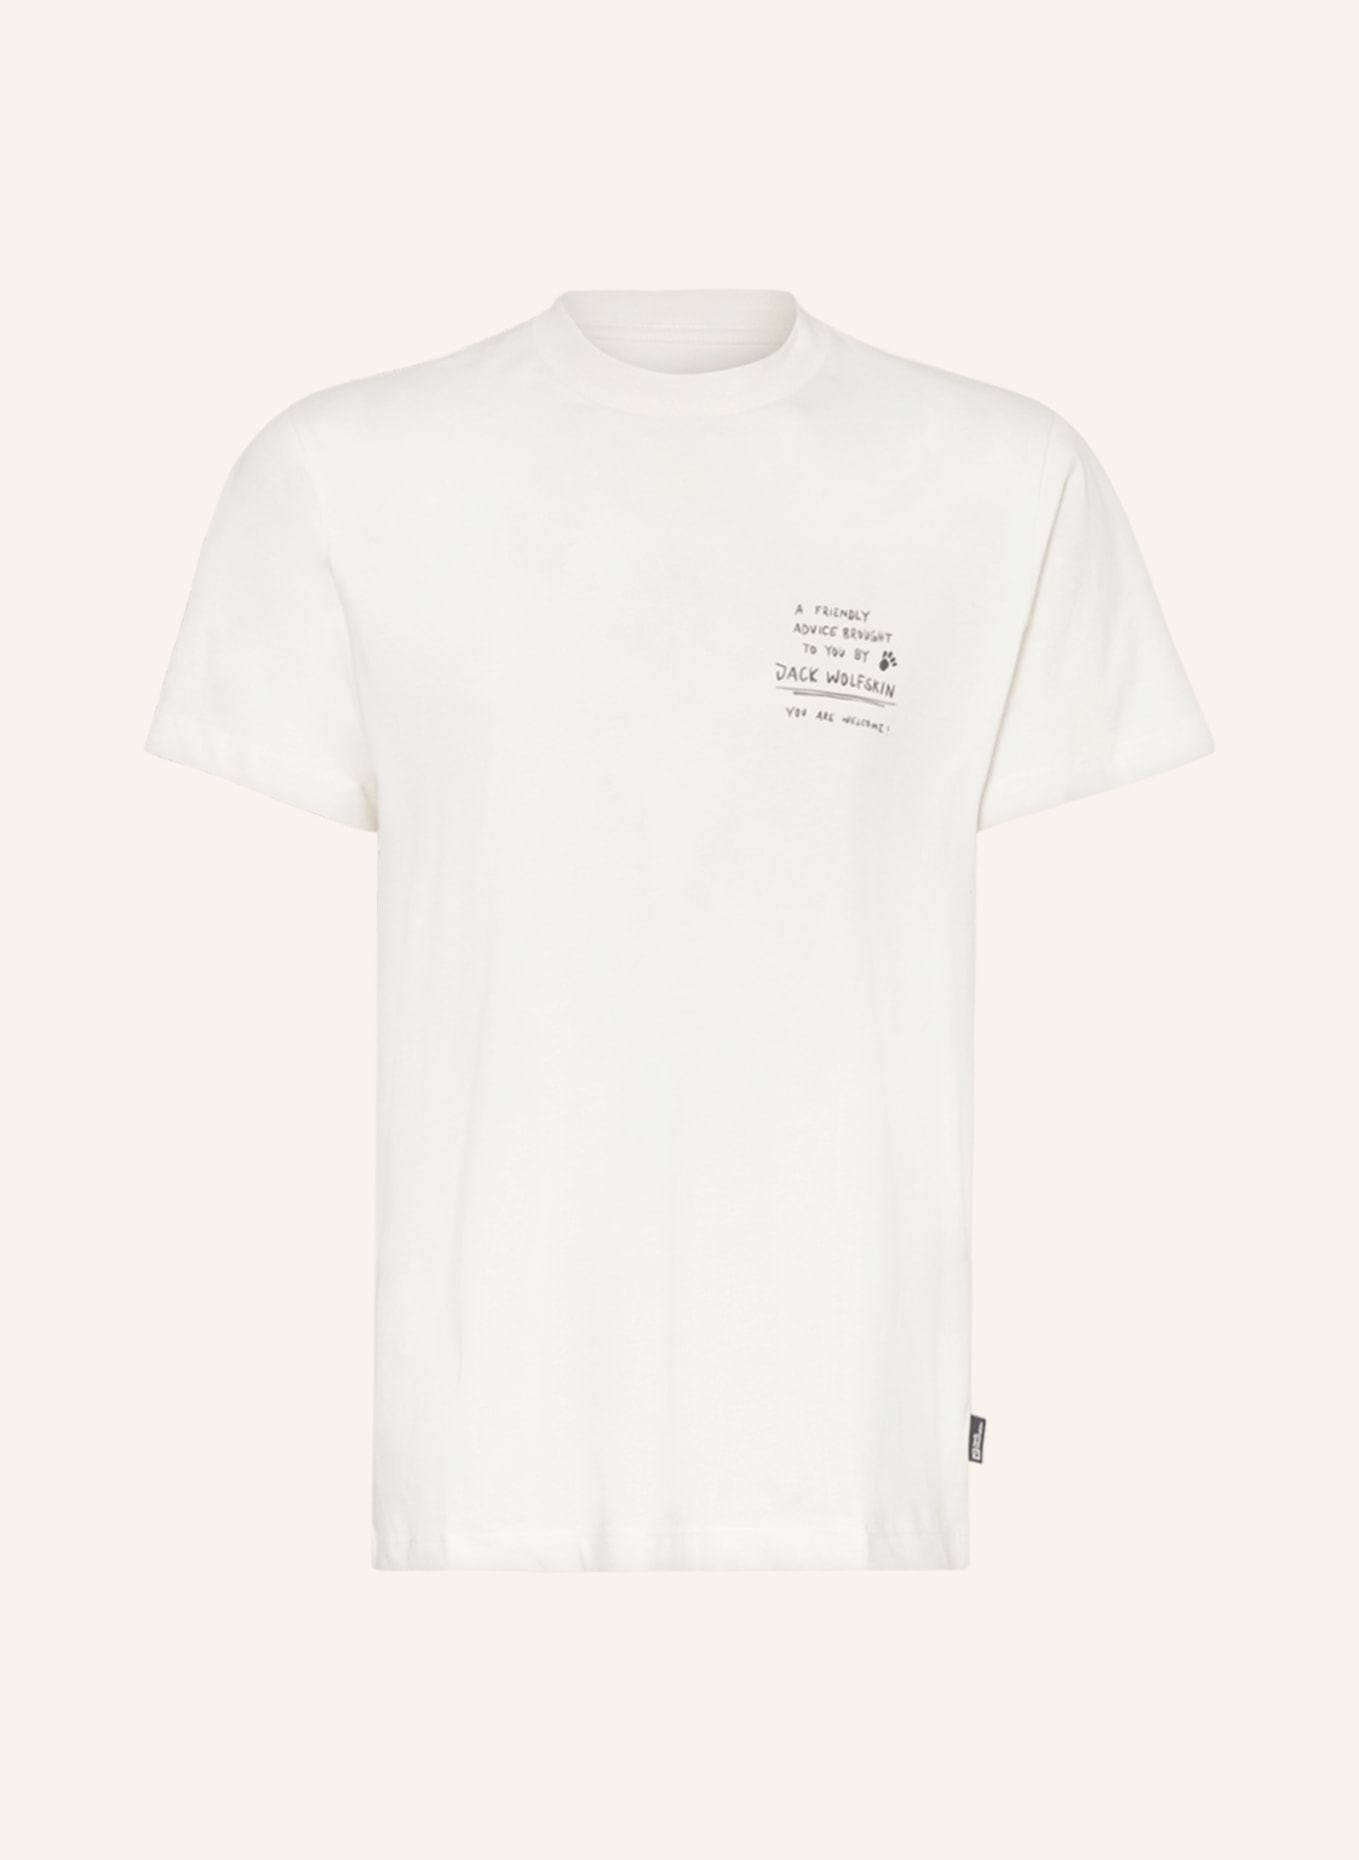 Jack Wolfskin T-Shirt JOURNEY, Farbe: CREME/ SCHWARZ (Bild 1)